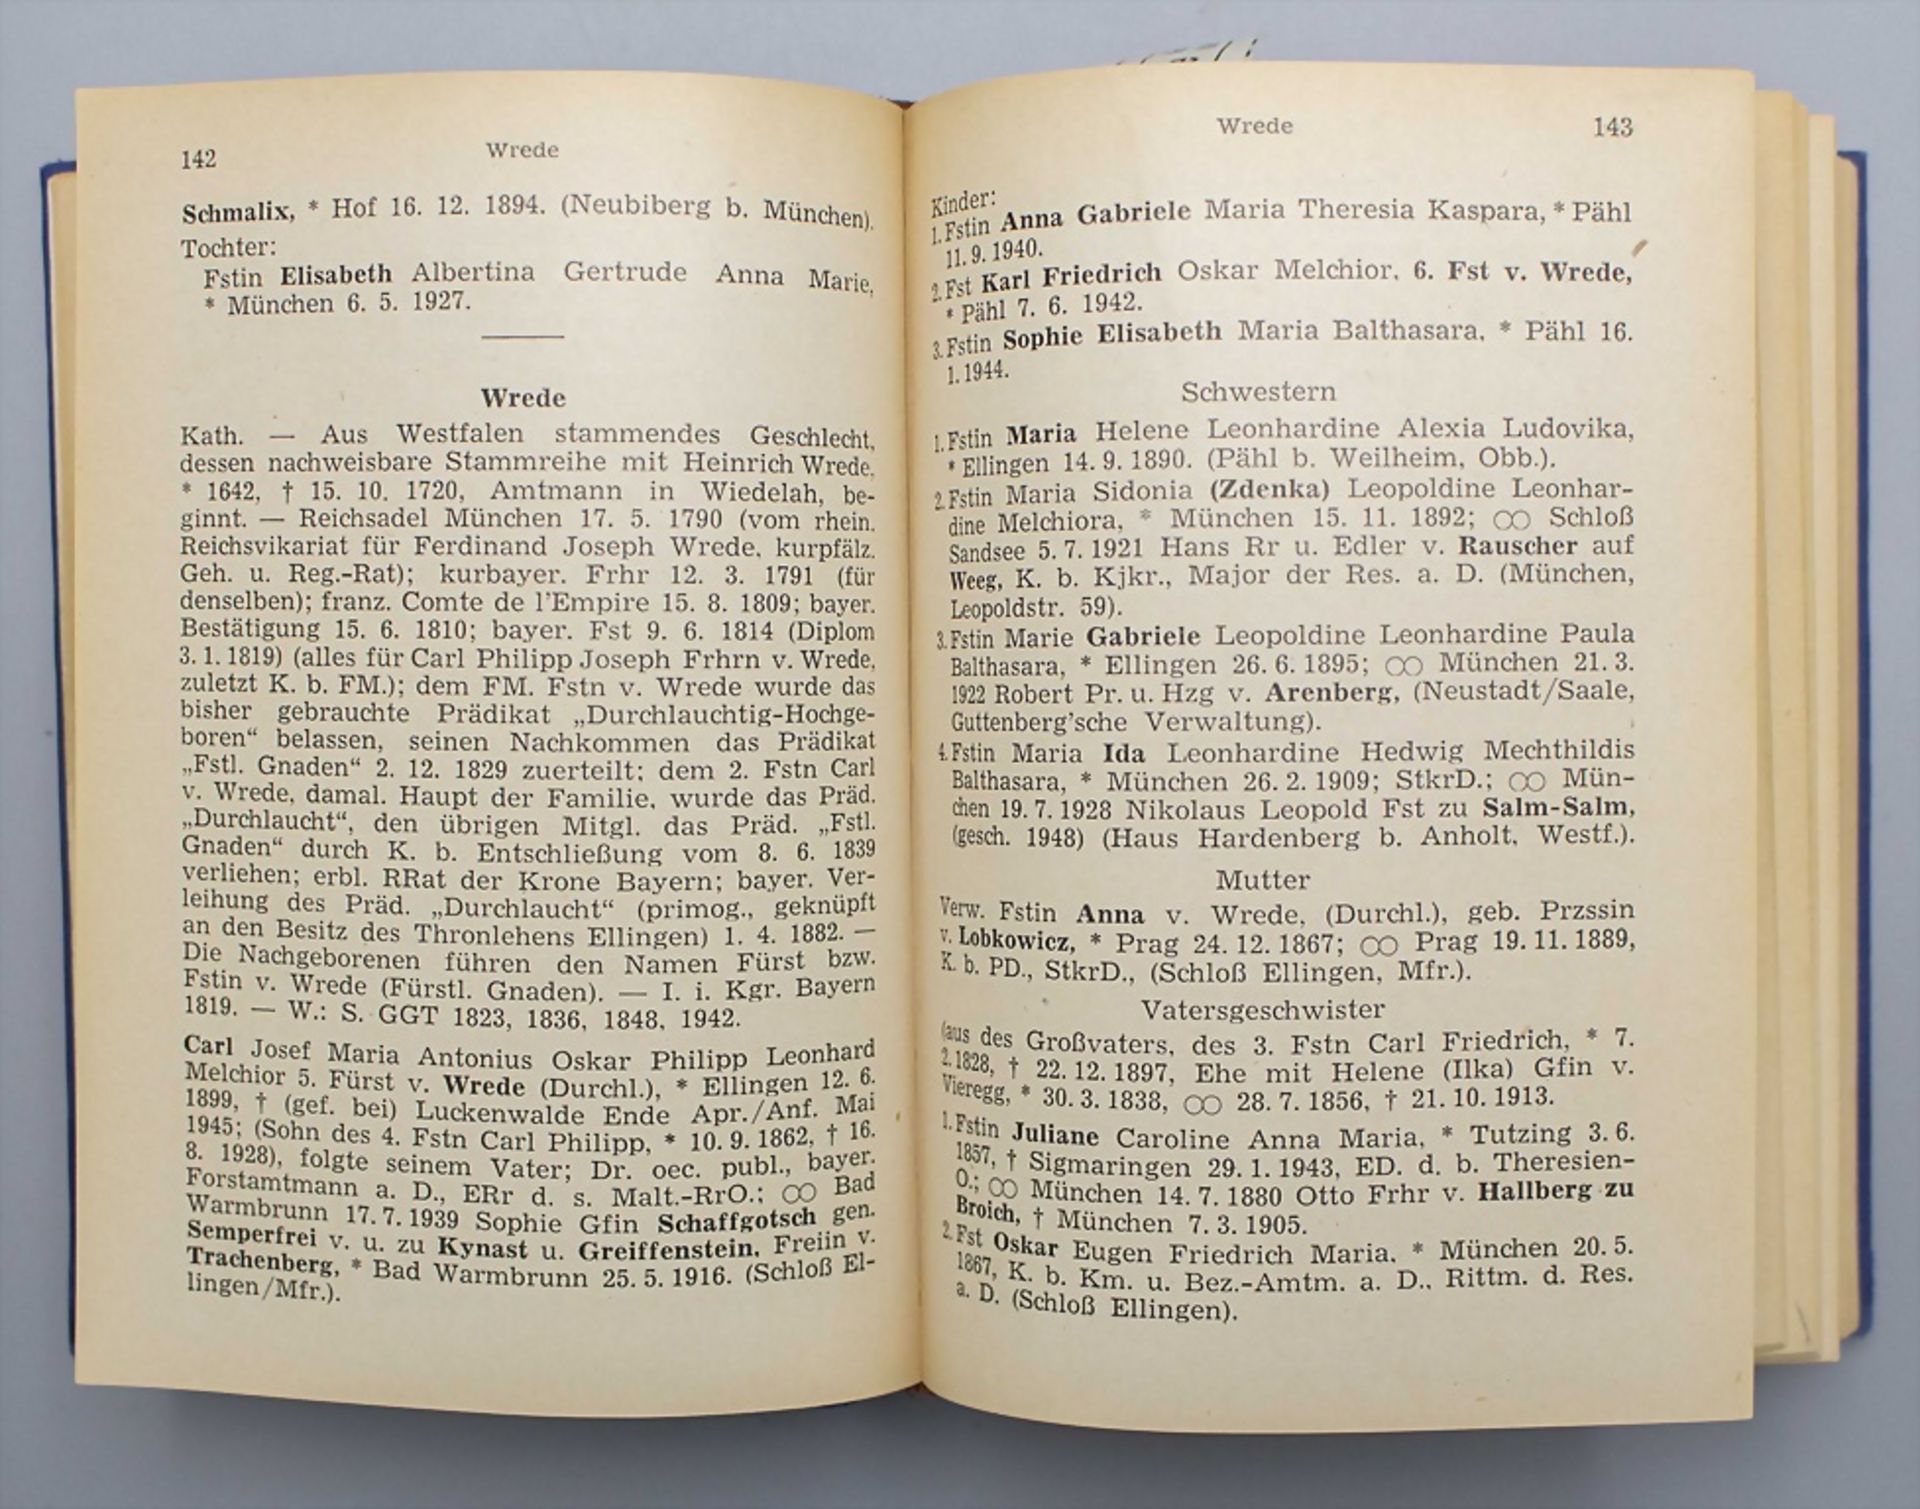 Genealogisches Handbuch des in Bayern immatrikulierten Adels, 1950-1952 - Image 3 of 6